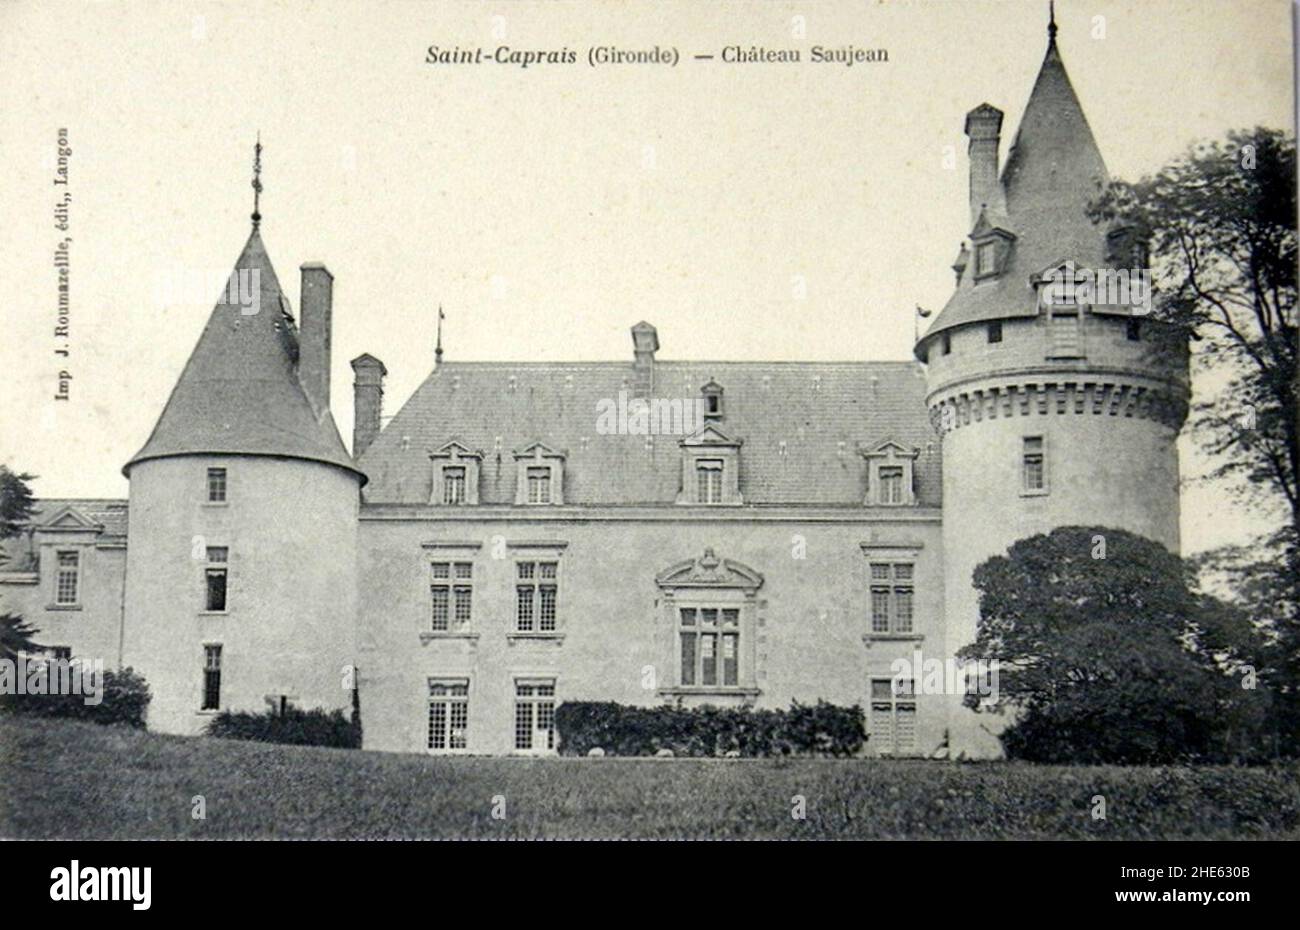 Saint-Caprais-de-Bordeaux - château Saujean 1. Stock Photo